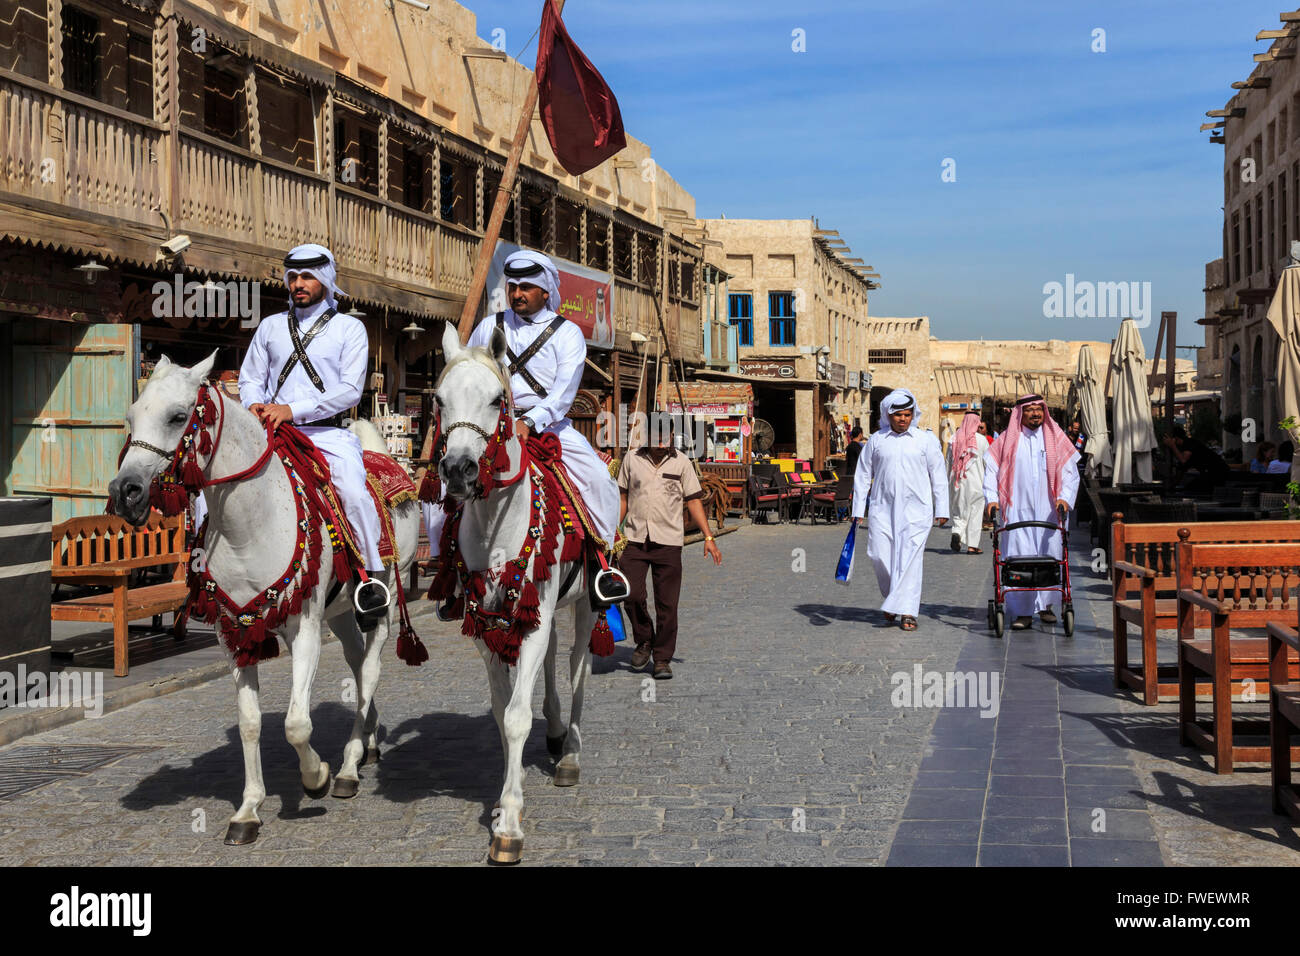 Beschäftigt Straßenszene mit traditionell gekleidet, berittene Polizisten und Shopper, Souq Waqif, Doha, Katar, Nahost Stockfoto